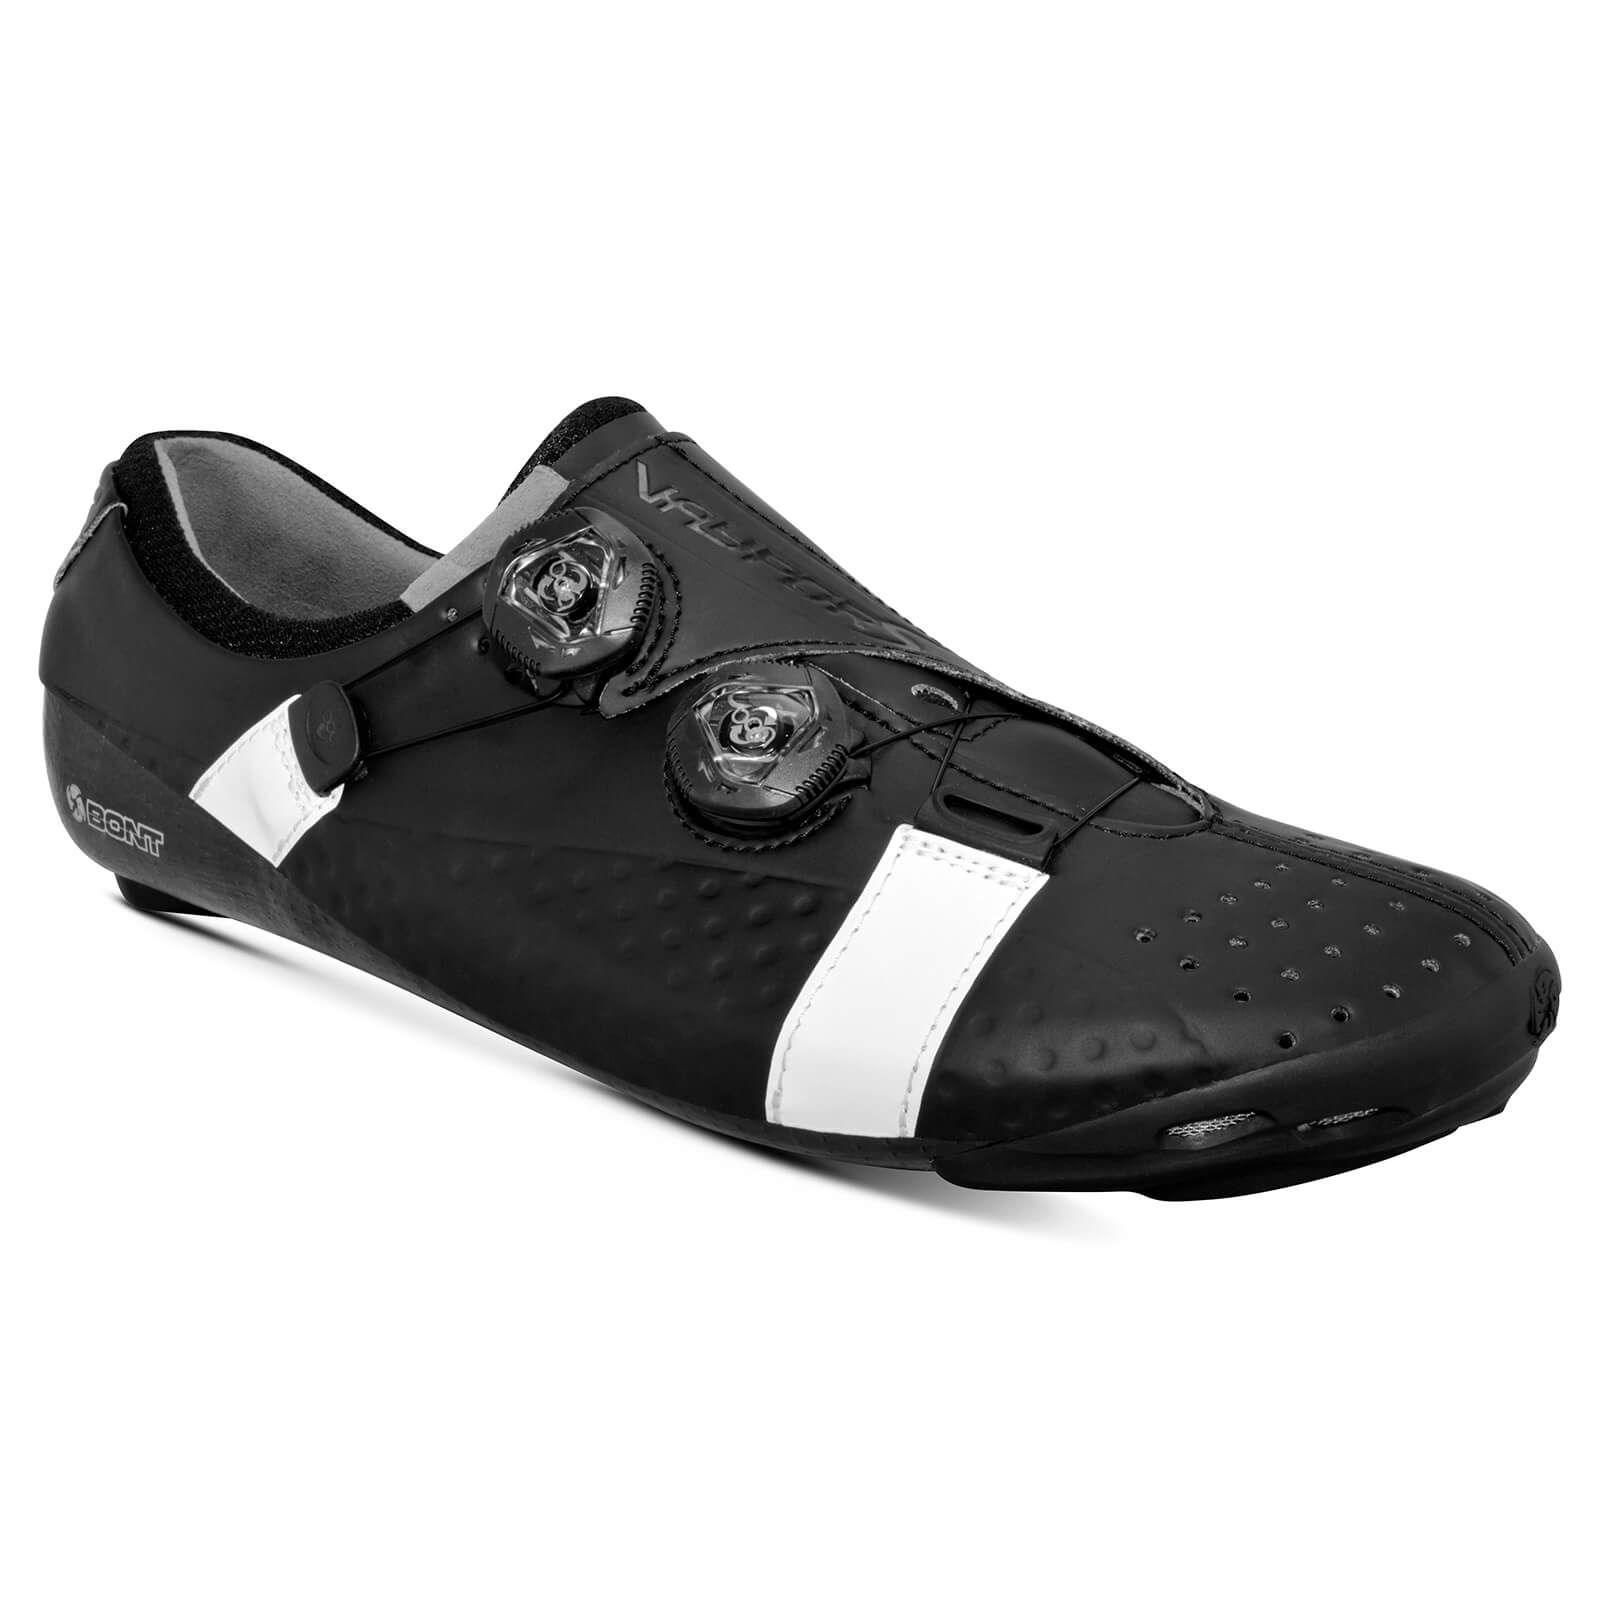 Bont Vaypor S Road Shoes - EU 41 - Standard Fit - Black/White